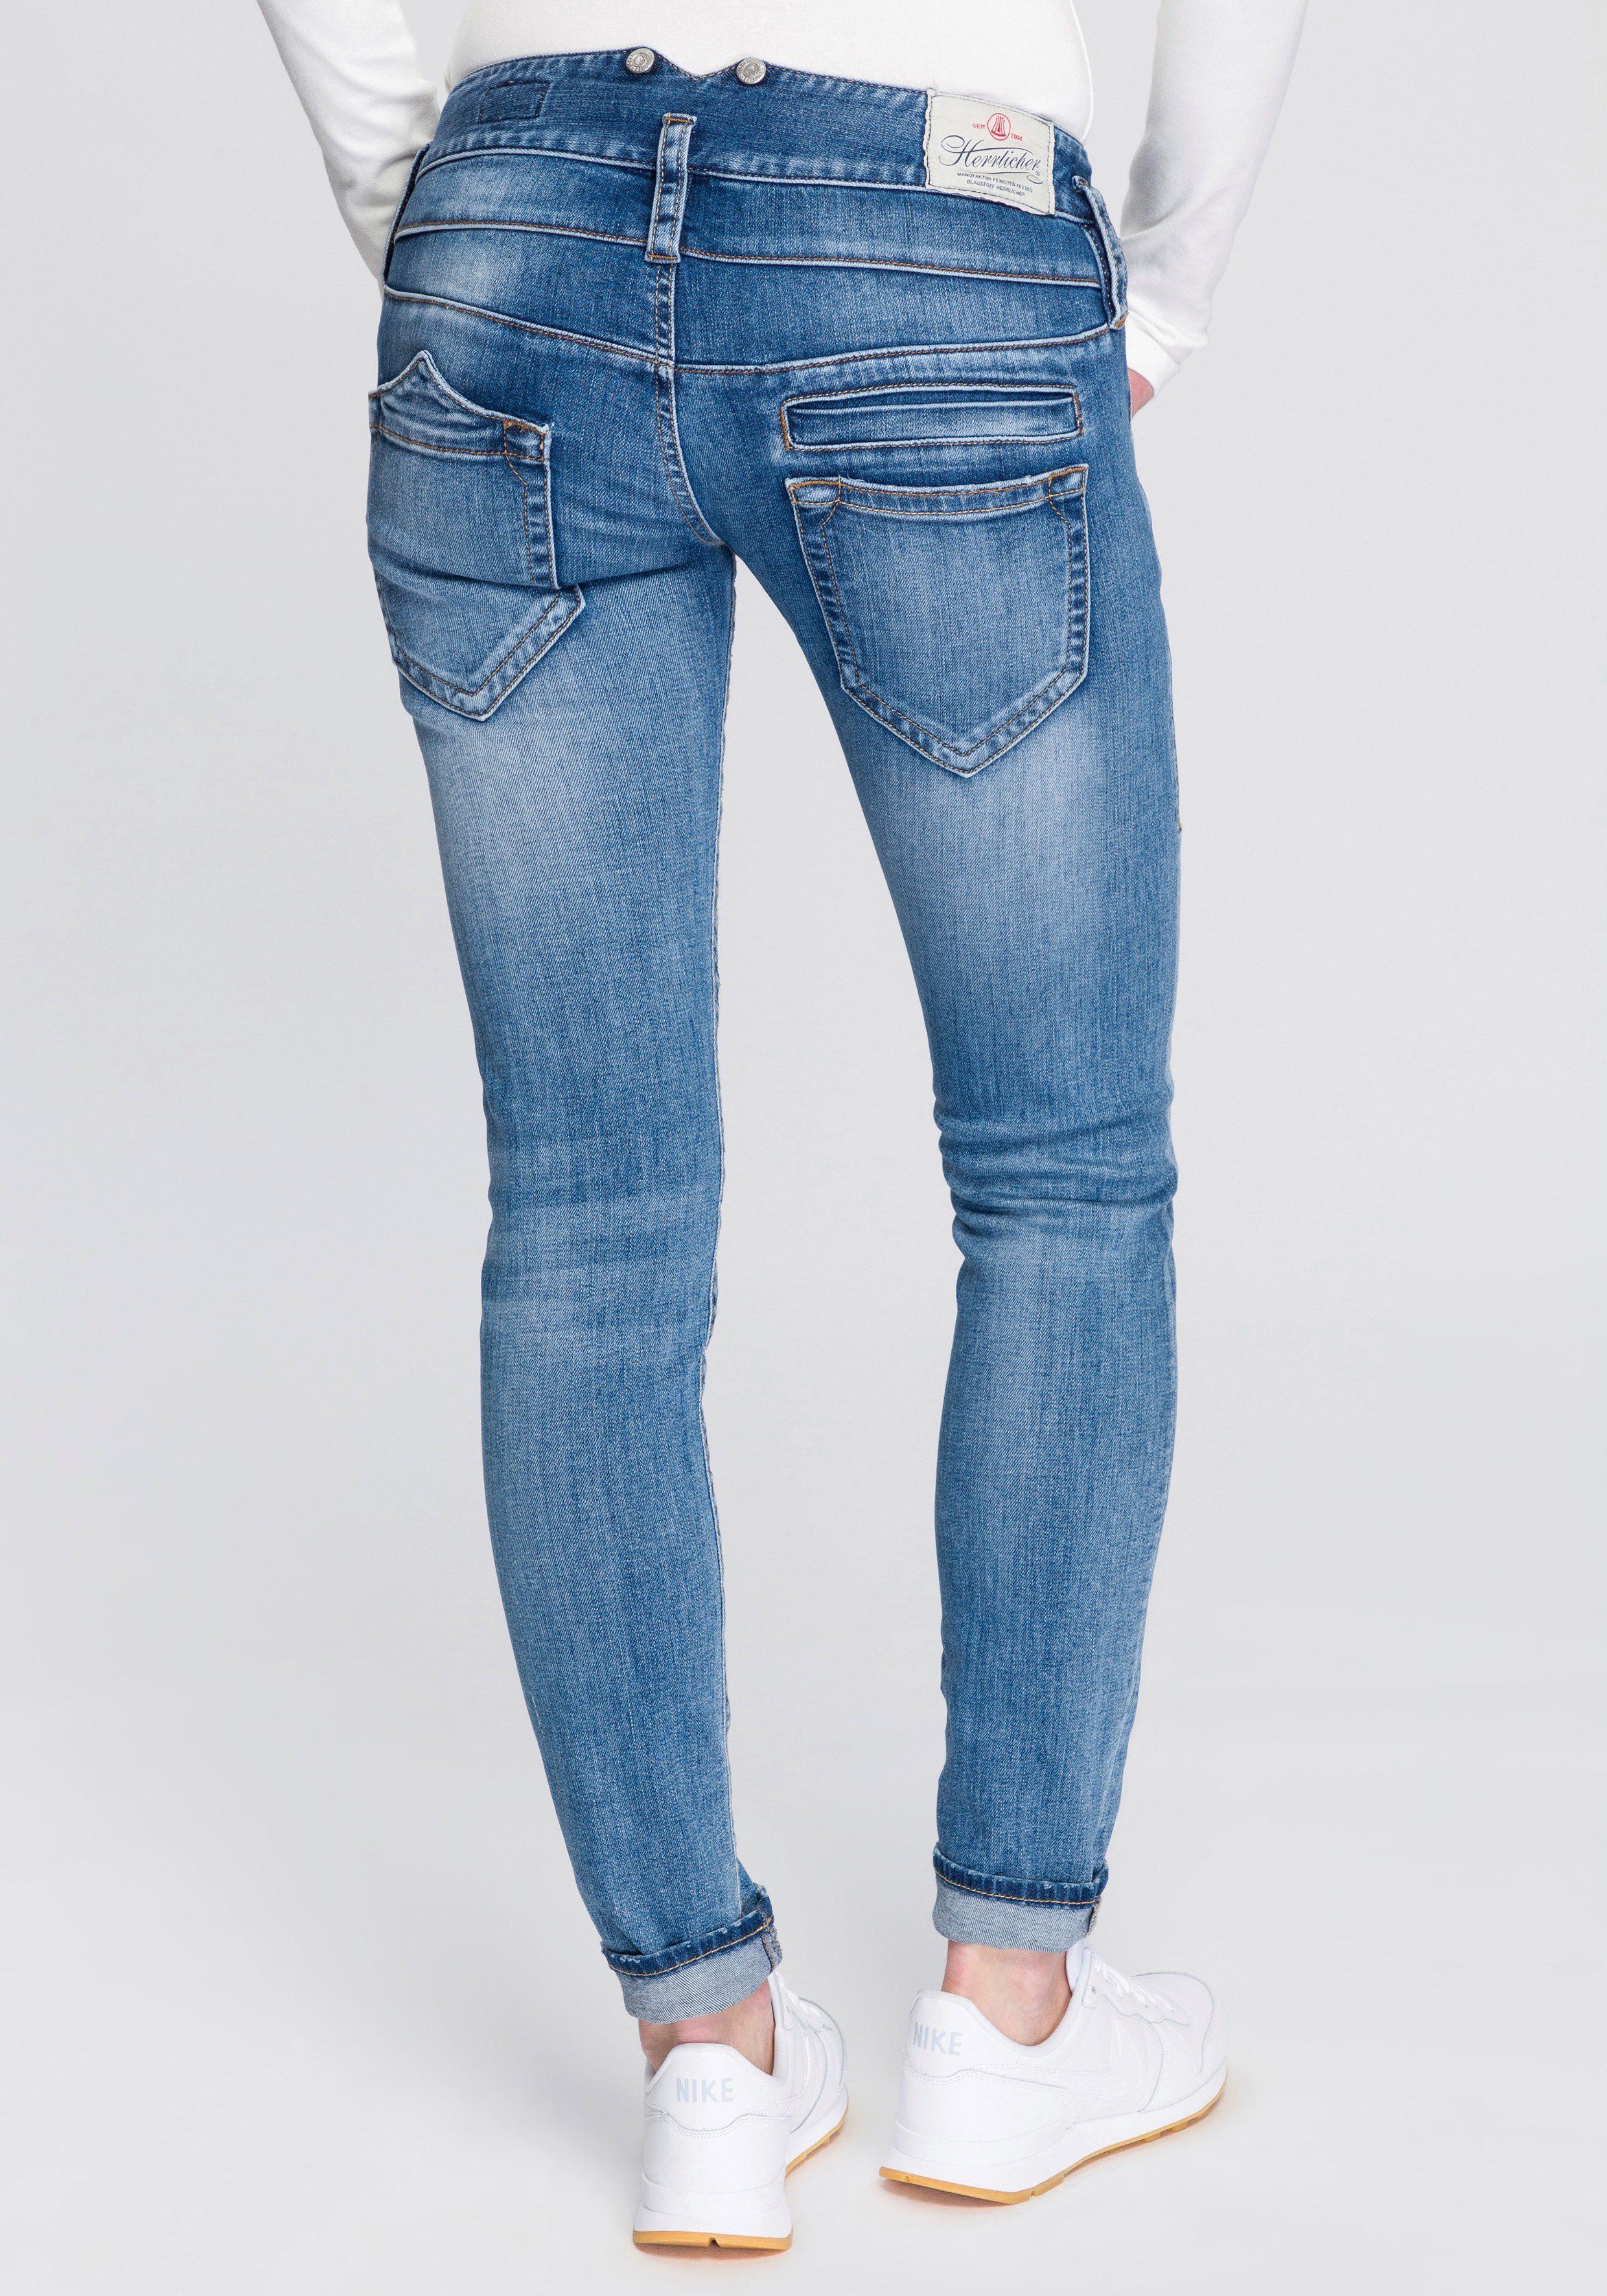 Herrlicher Slim-fit-Jeans PITCH SLIM ORGANIC umweltfreundlich dank Kitotex  Technology